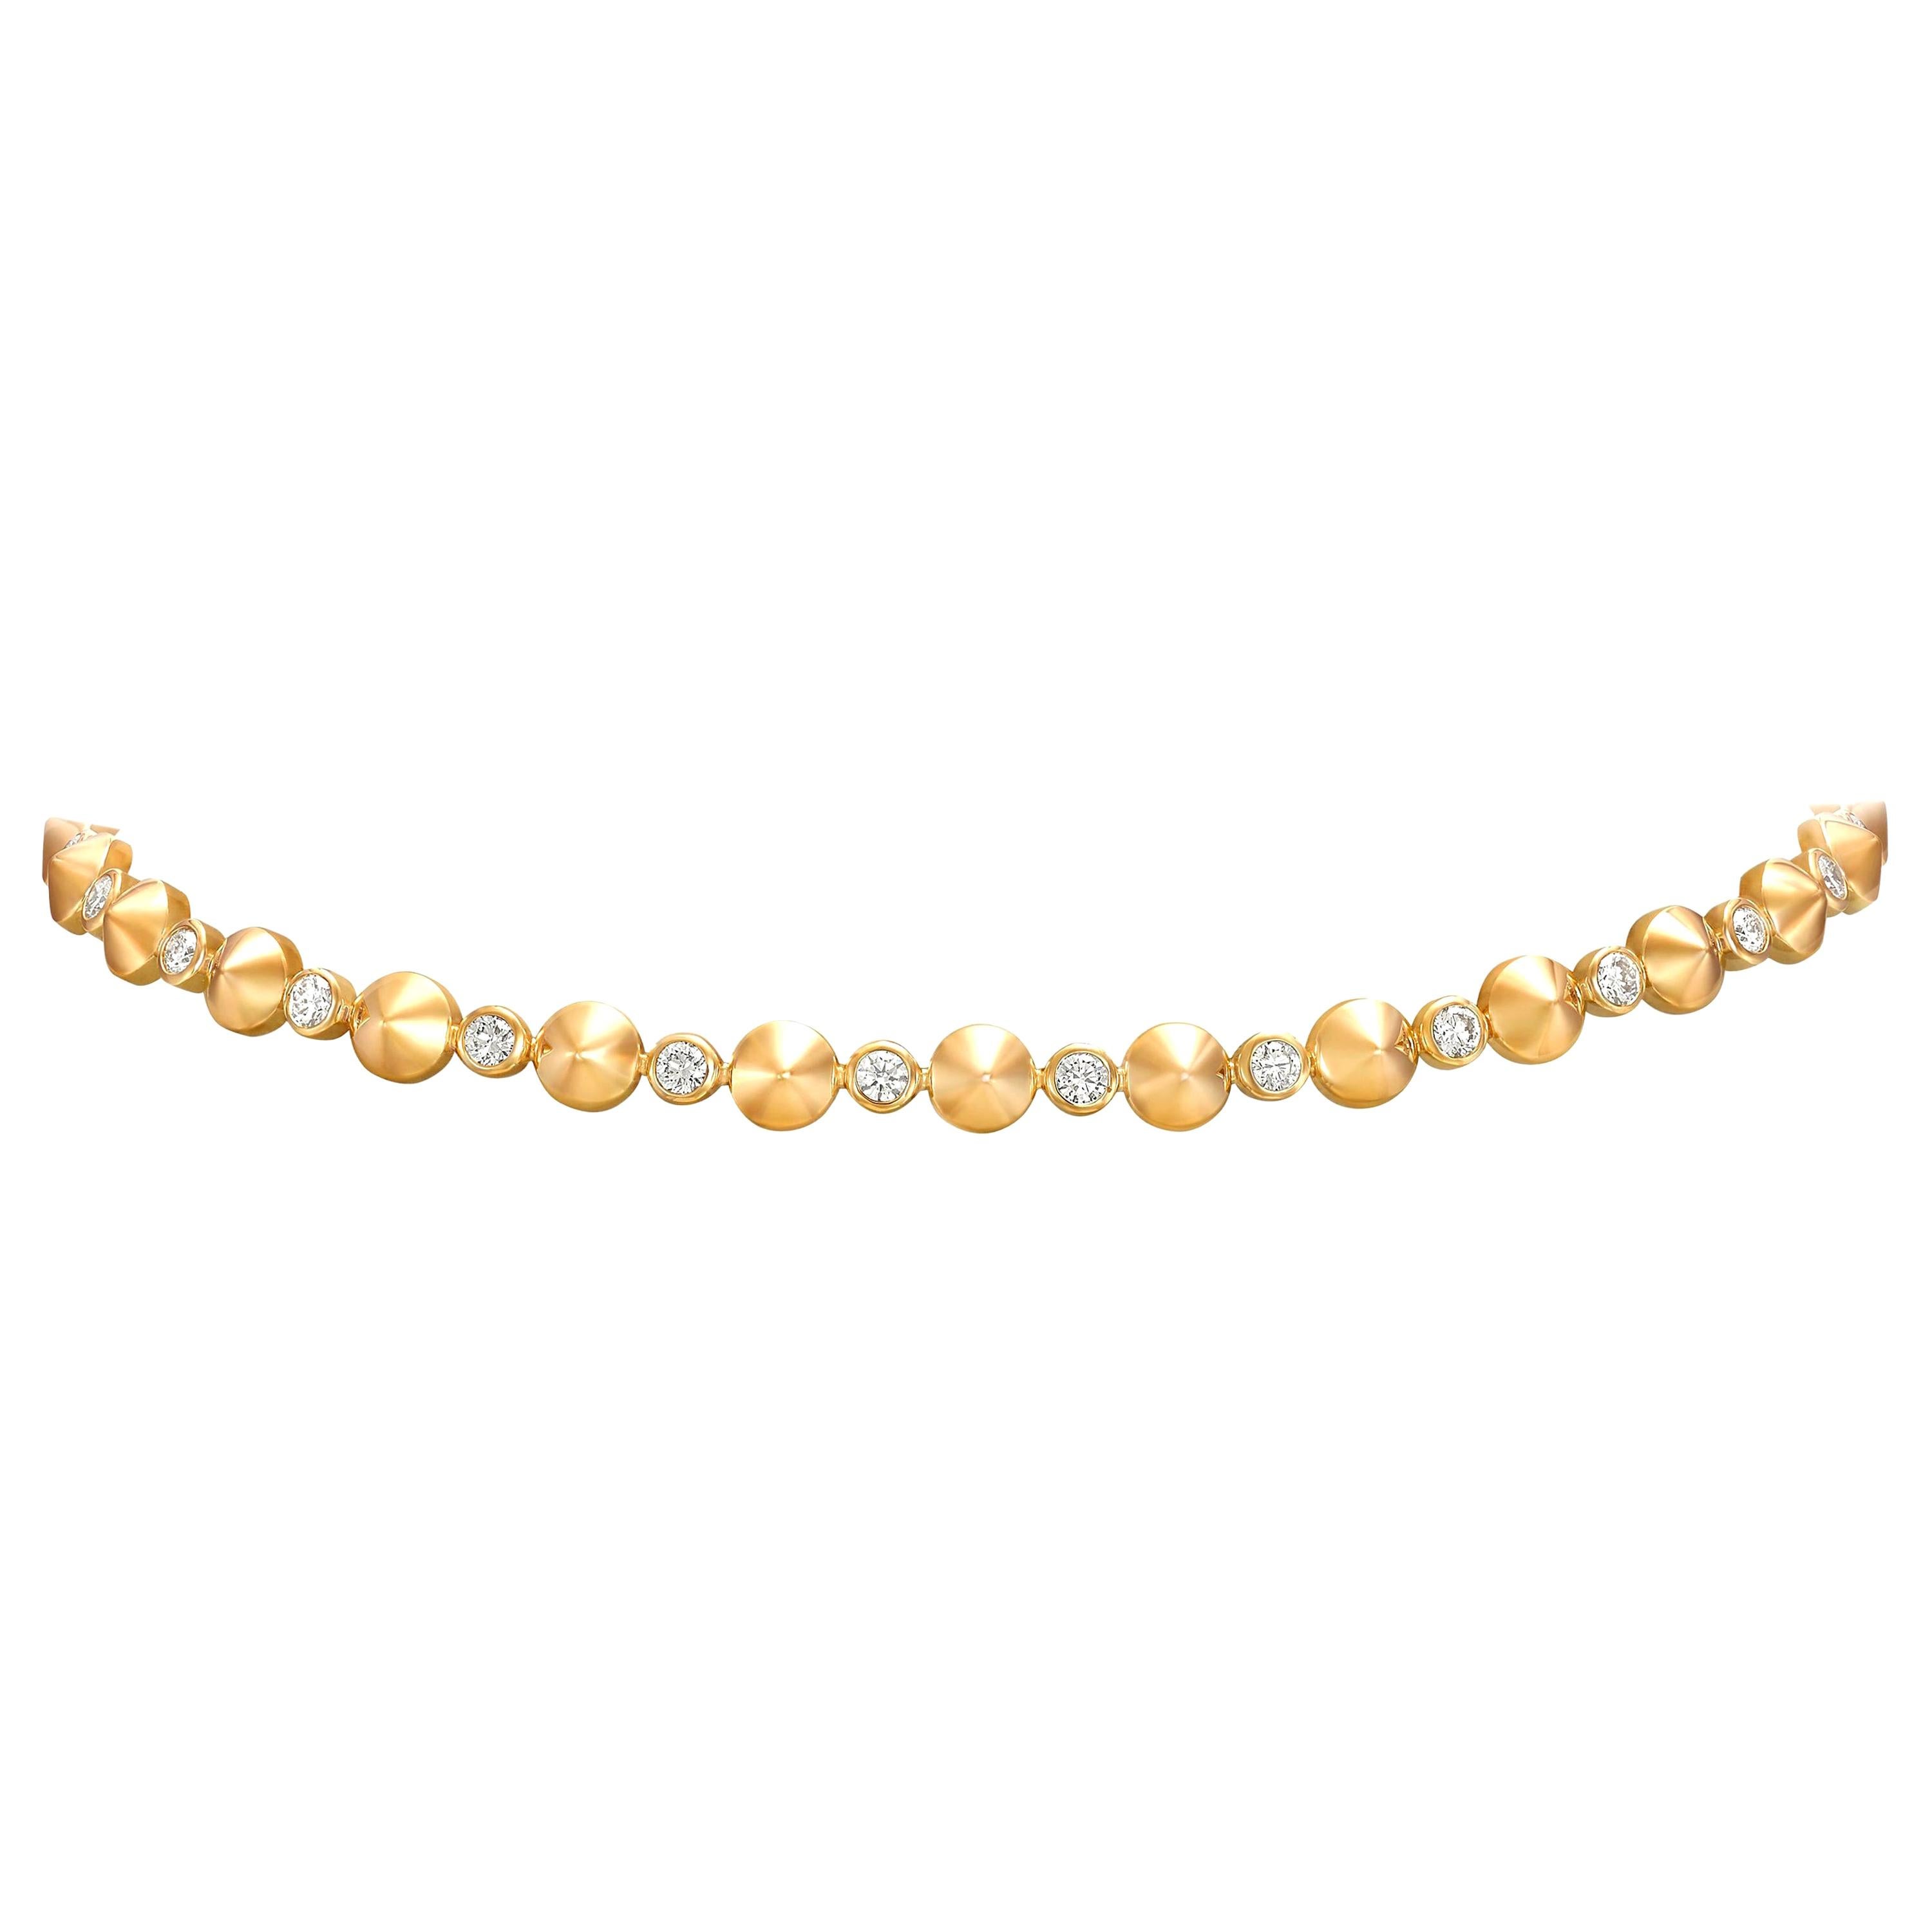 18 Karat Yellow Gold and White Diamonds Choker Necklace